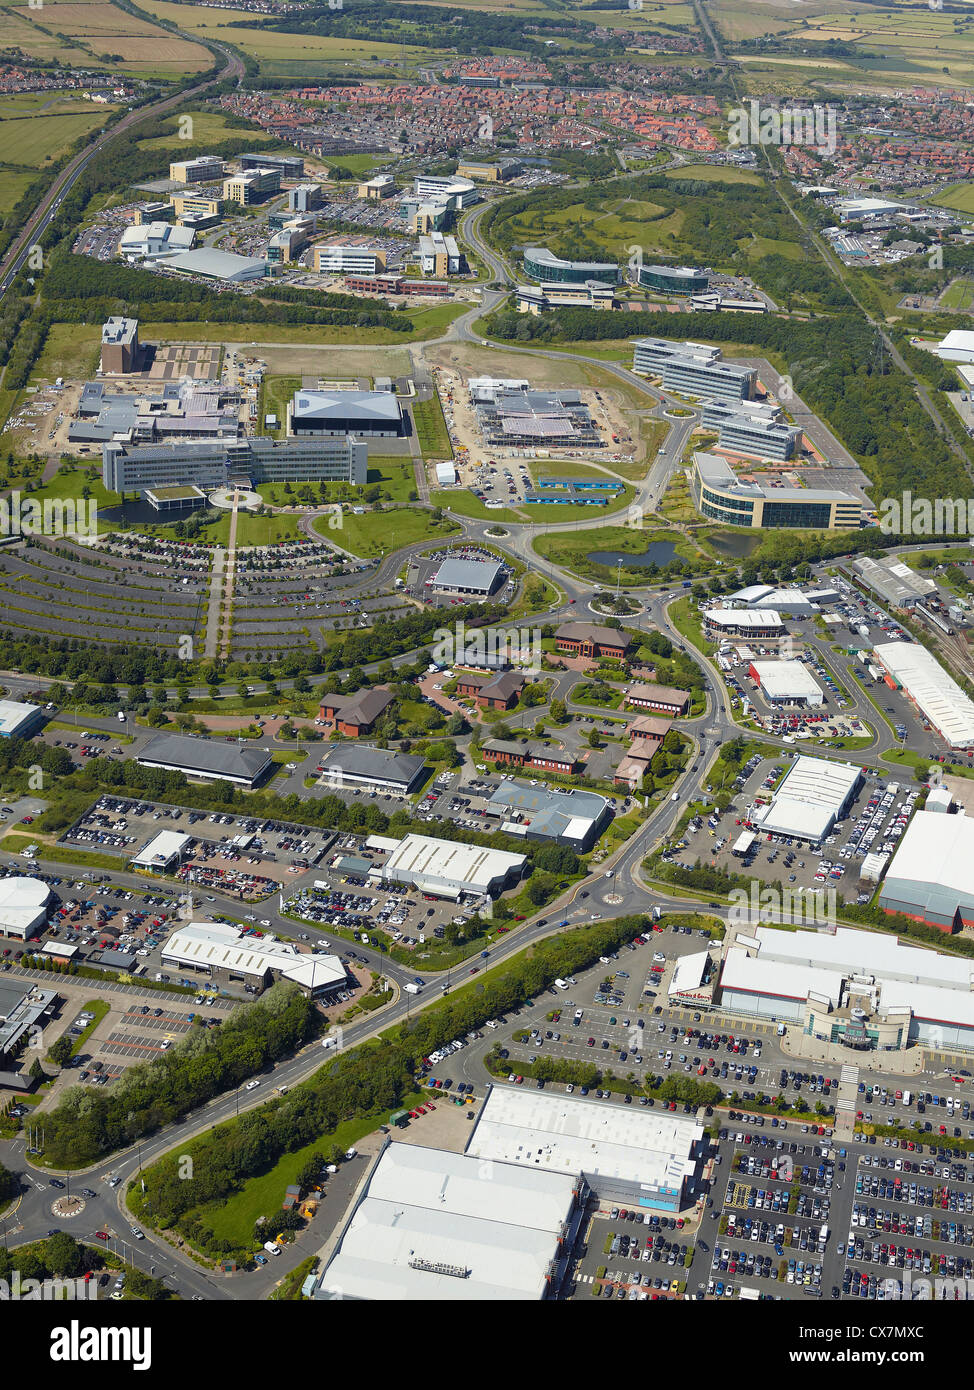 Silverlink area business, Newcastle upon Tyne, nel nord est dell'Inghilterra, Regno Unito, Siemens sito visibile in background Foto Stock